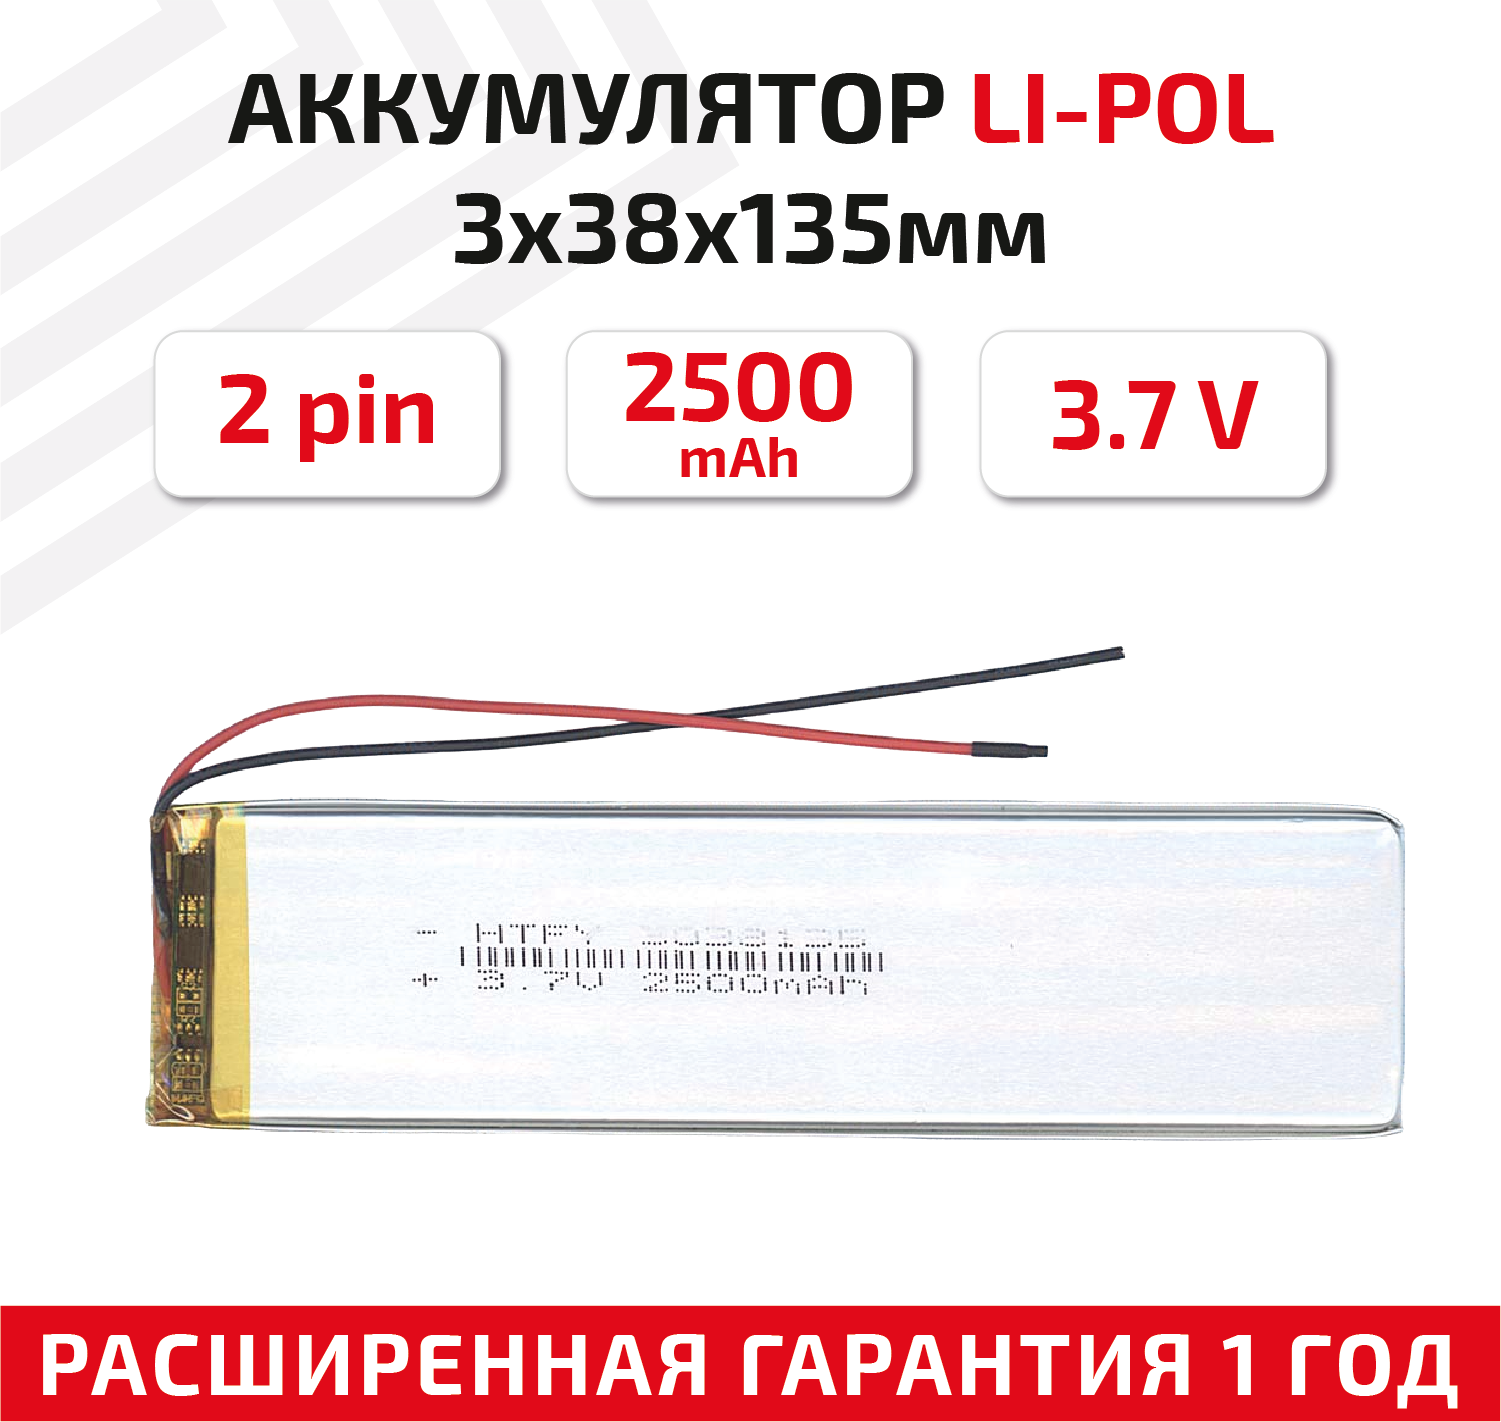 Универсальный аккумулятор (АКБ) для планшета, видеорегистратора и др, 3х38х135мм, 2500мАч, 3.7В, Li-Pol, 2pin (на 2 провода)